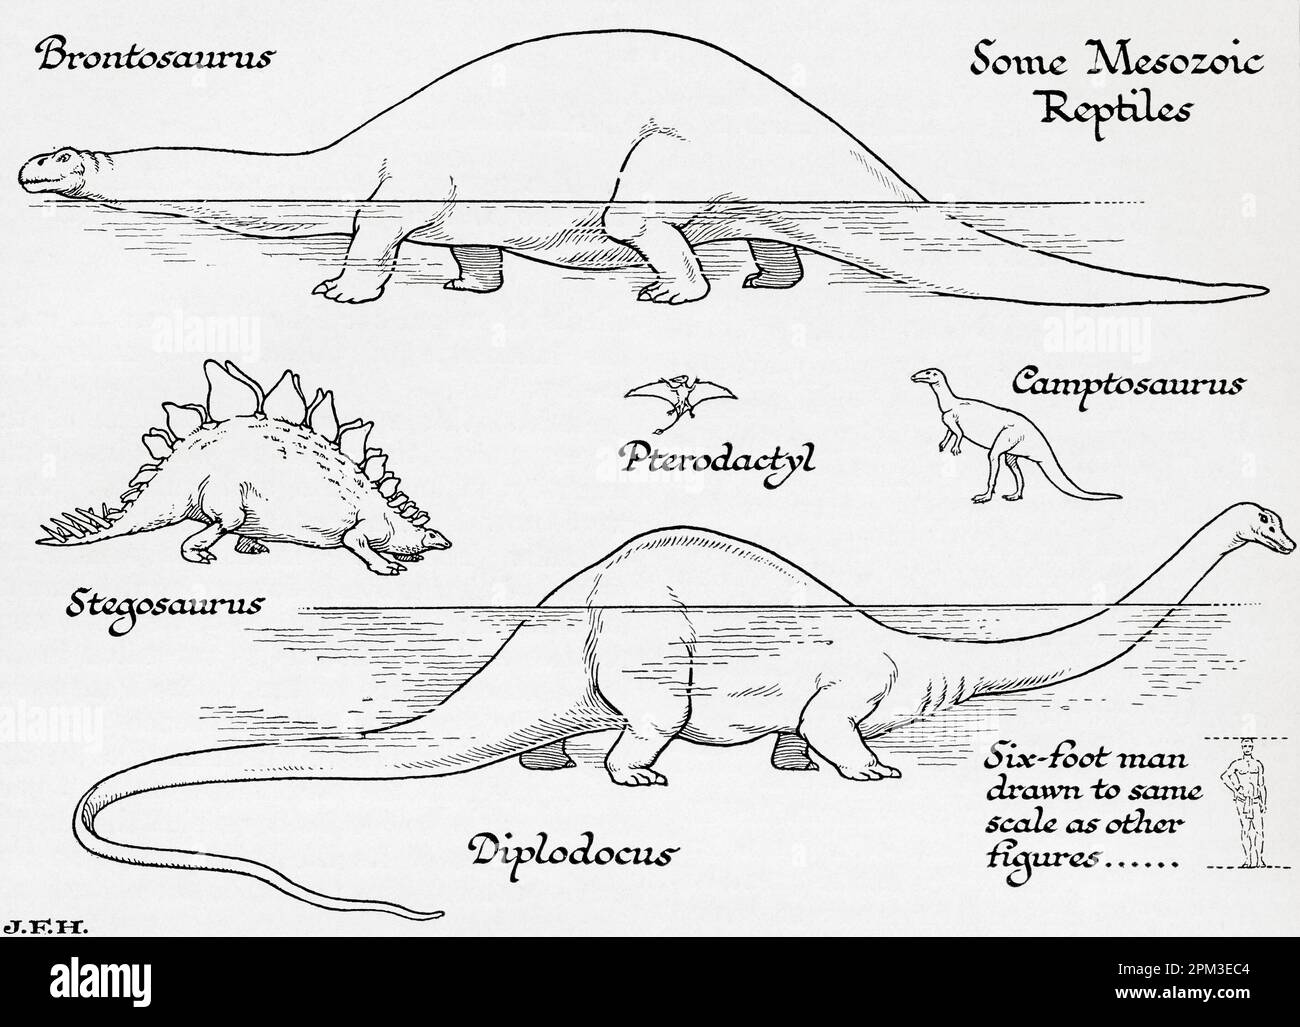 Mesozoische Reptilien. Brontosaurus, Pterodactyl, Campotosaurus, Stegosaurus, Diplodocus. In der Abbildung ist ein 1,80 m großer Mann dargestellt, der auf die gleiche Skala wie andere Figuren gezeichnet ist. Aus dem Buch Outline of History von H.G. Wells, veröffentlicht 1920. Stockfoto